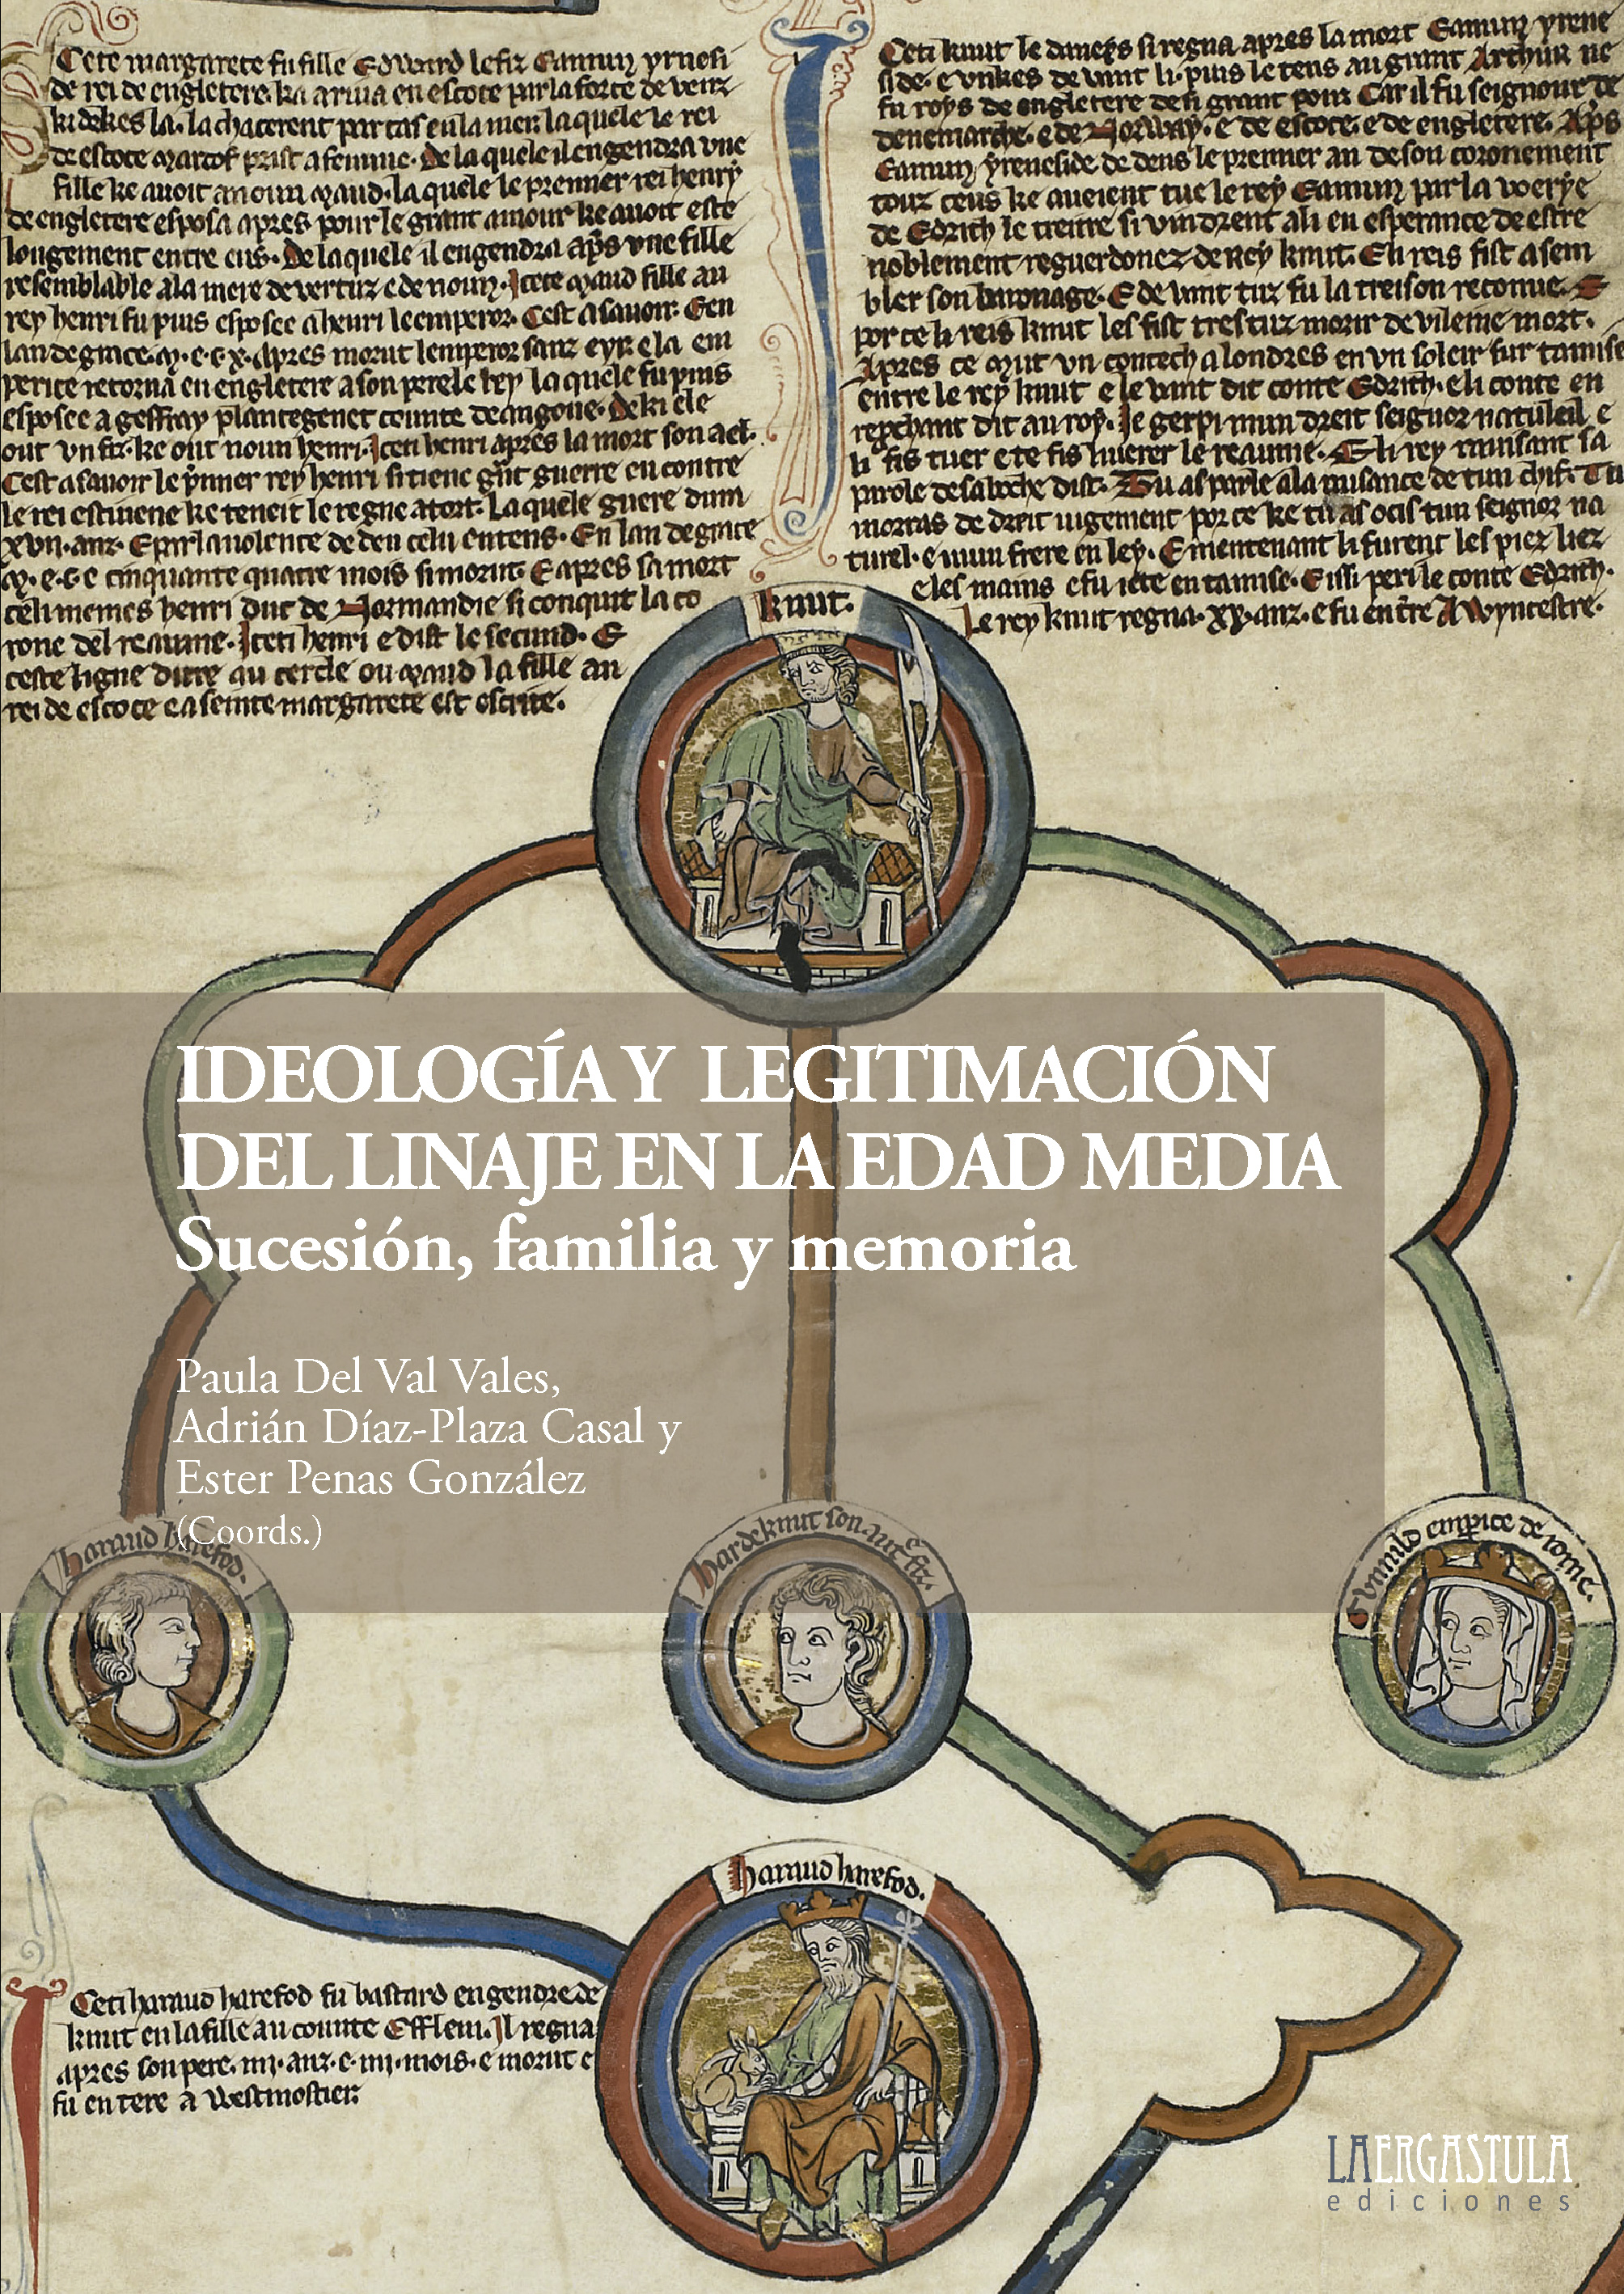 Ideología y legitimación del linaje en la Edad Media